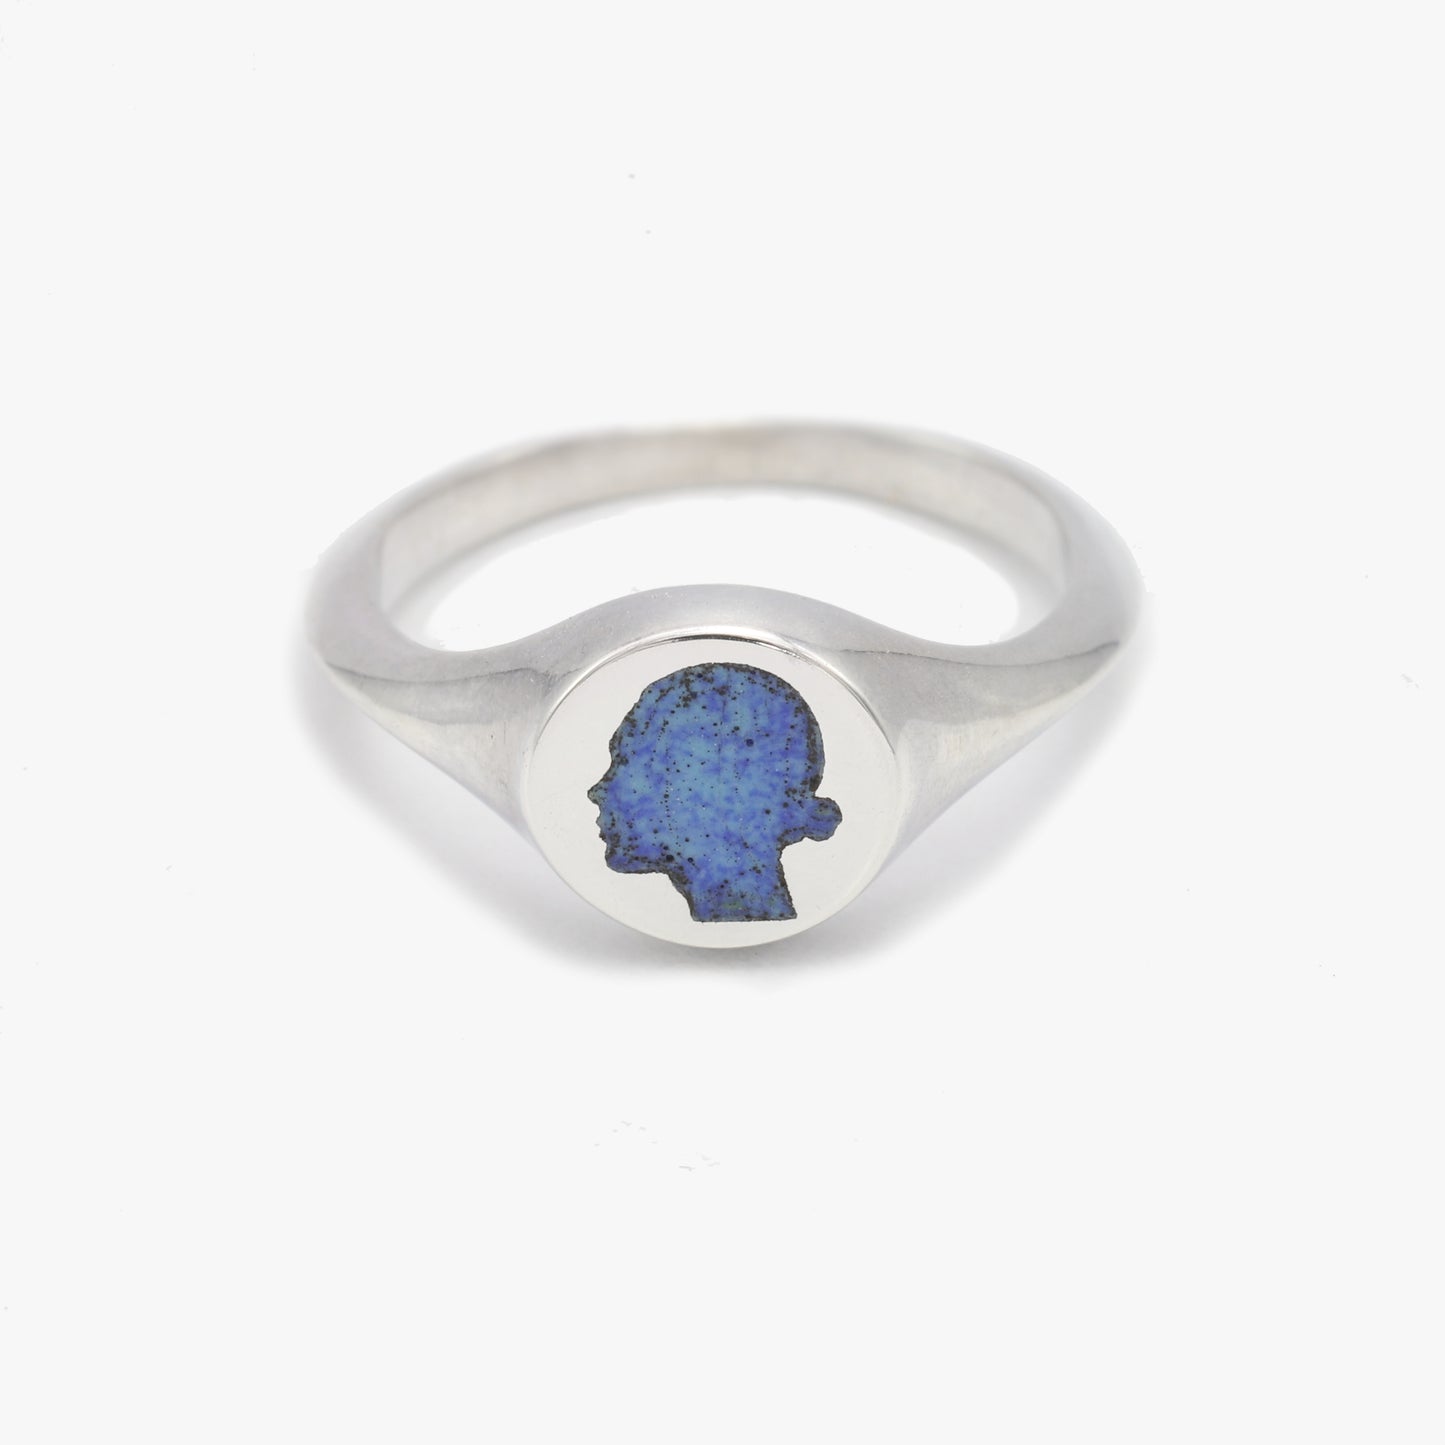 Speckled Blue Signet Ring